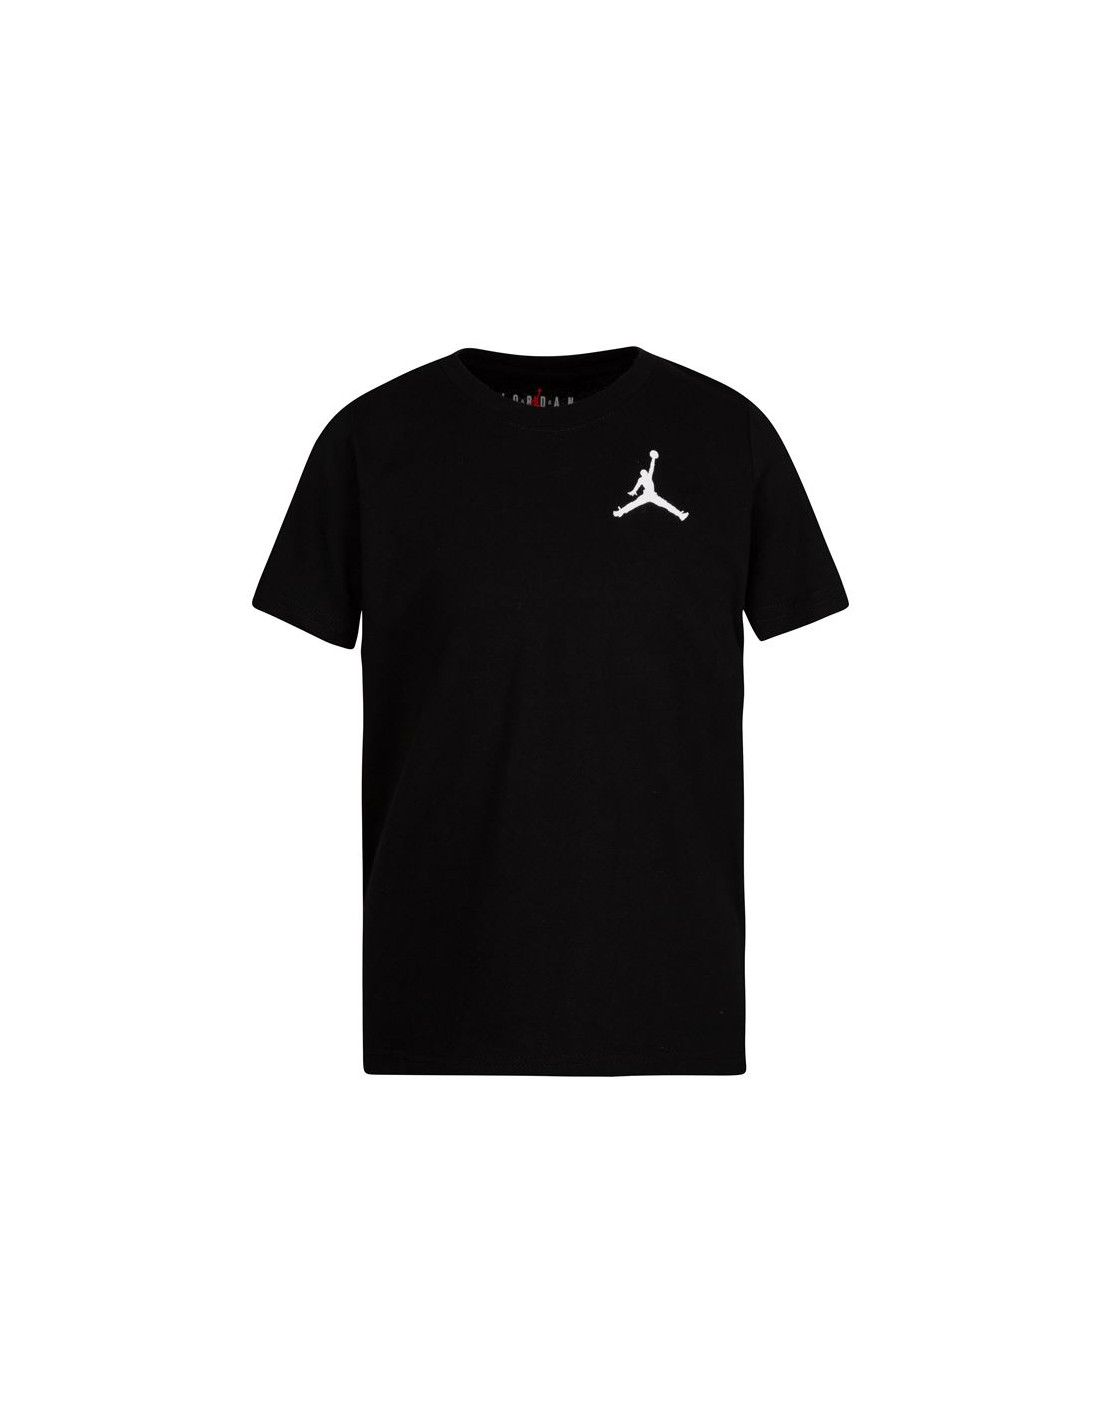 Camiseta jordan jumpamn air emb infantil black